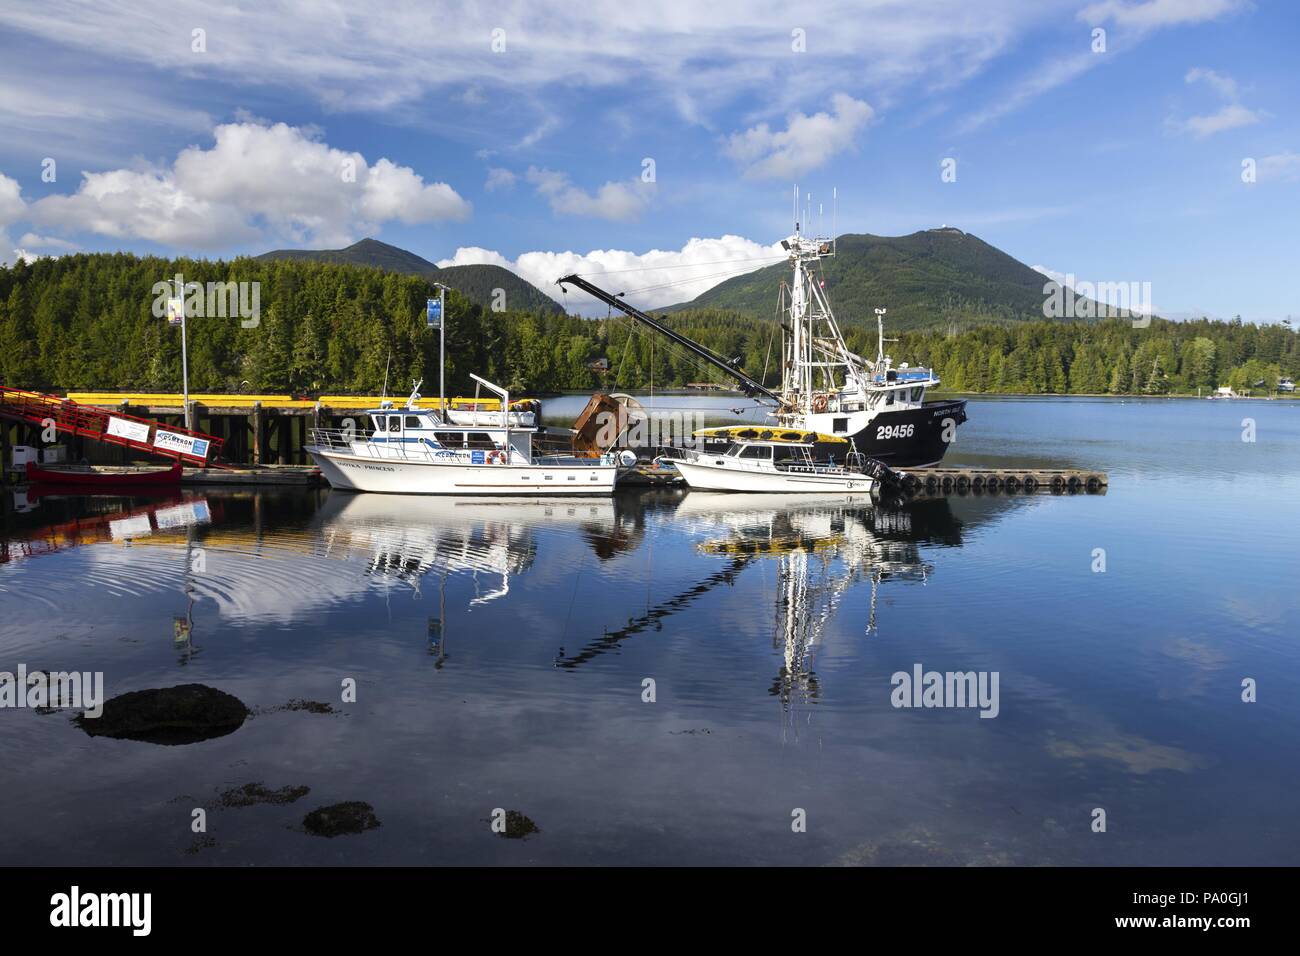 Les bateaux de pêche à quai dans le port d'Ucluelet près de la Réserve de parc national Pacific Rim sur l'île de Vancouver Banque D'Images